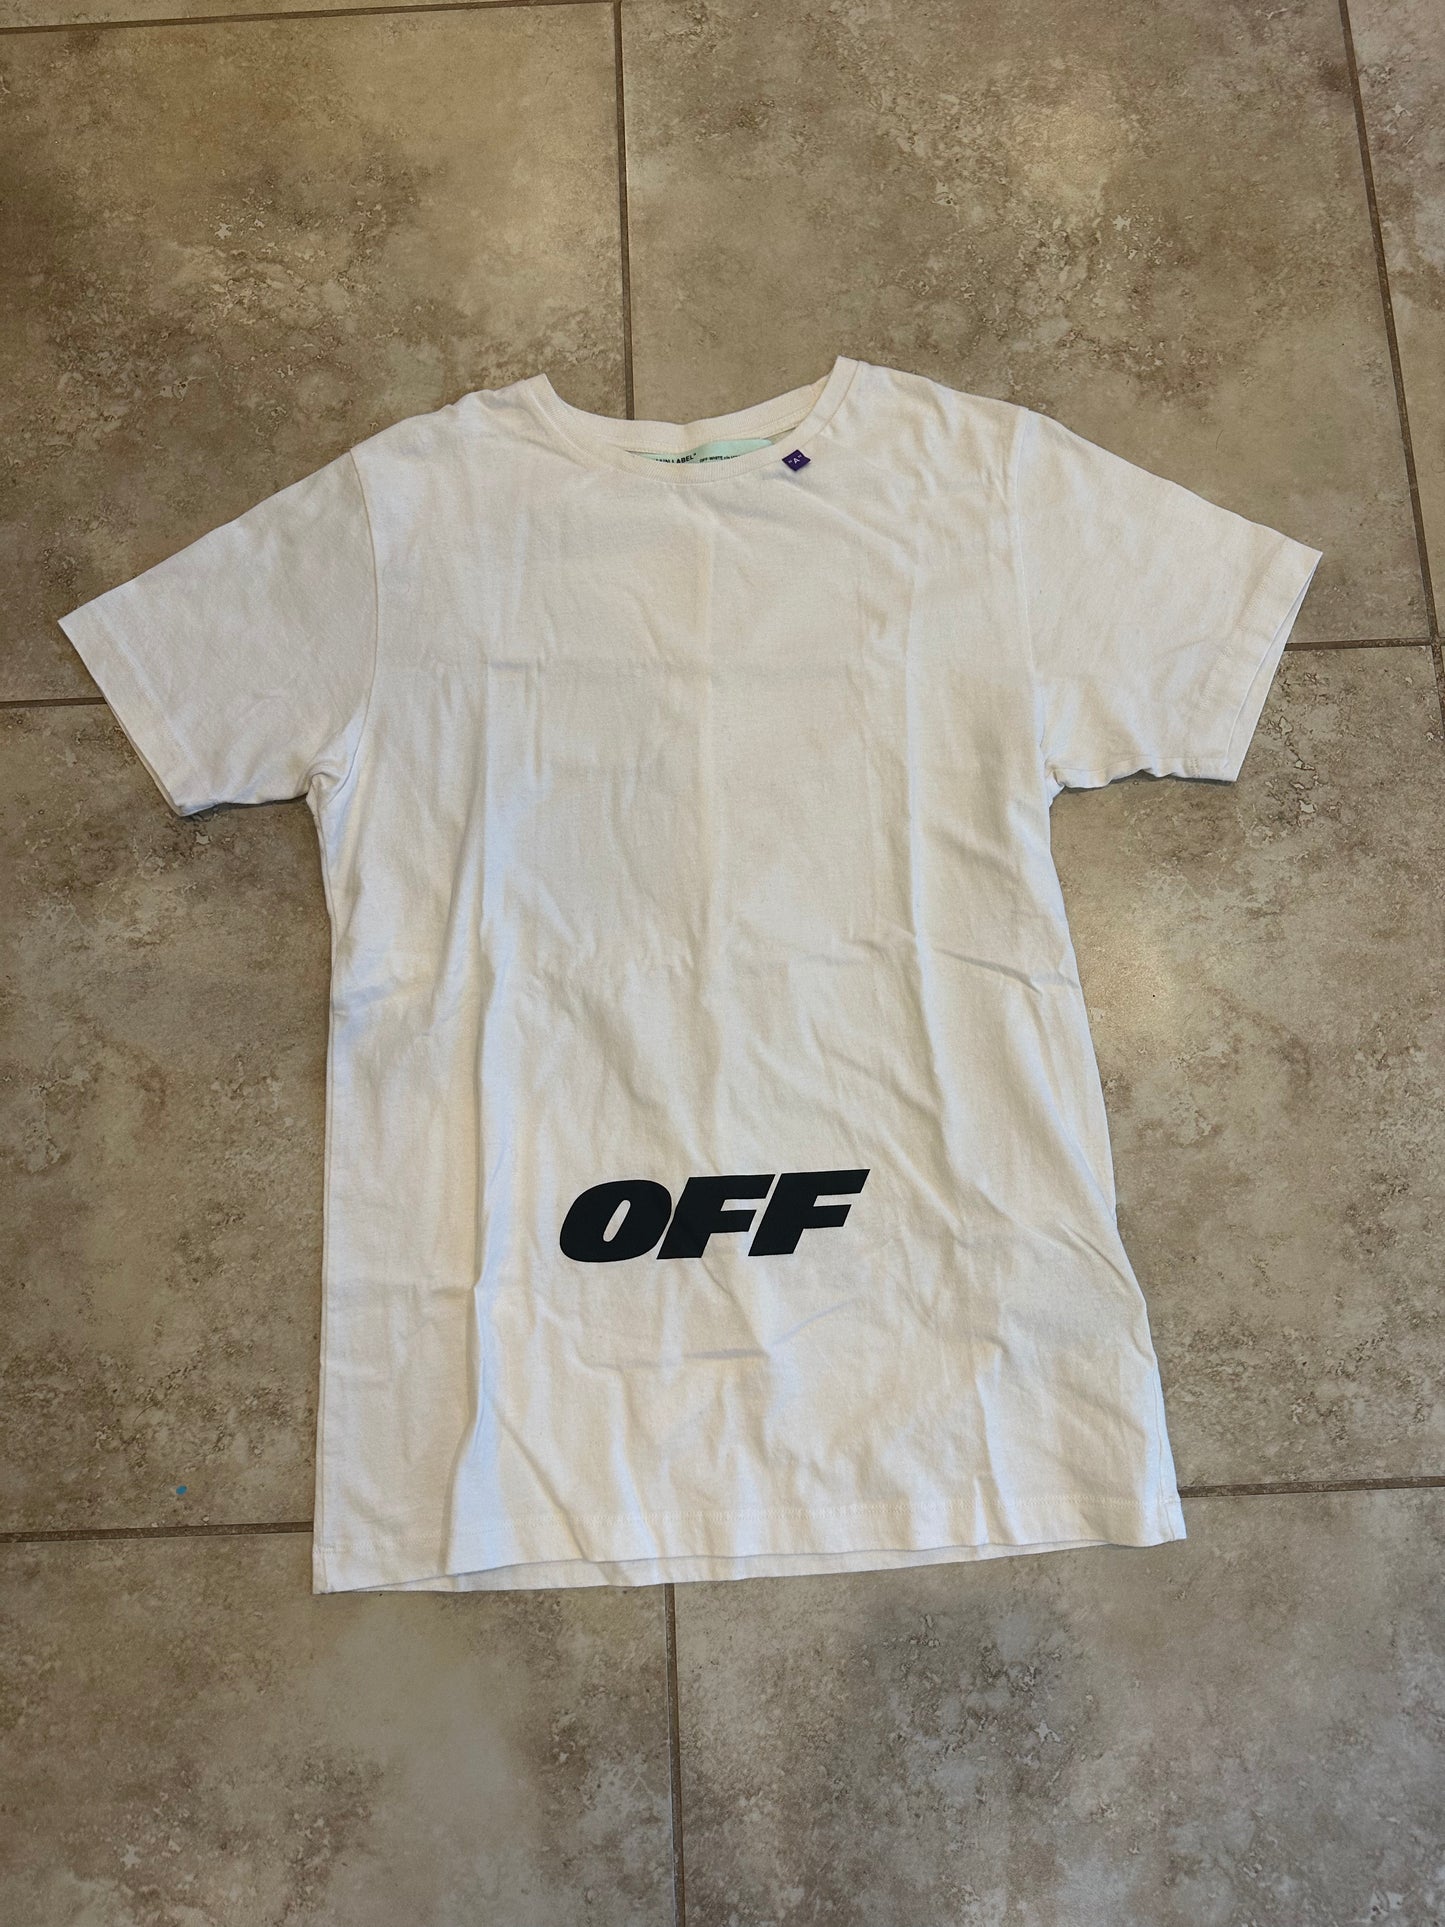 Off-White “OFF” logo Tee